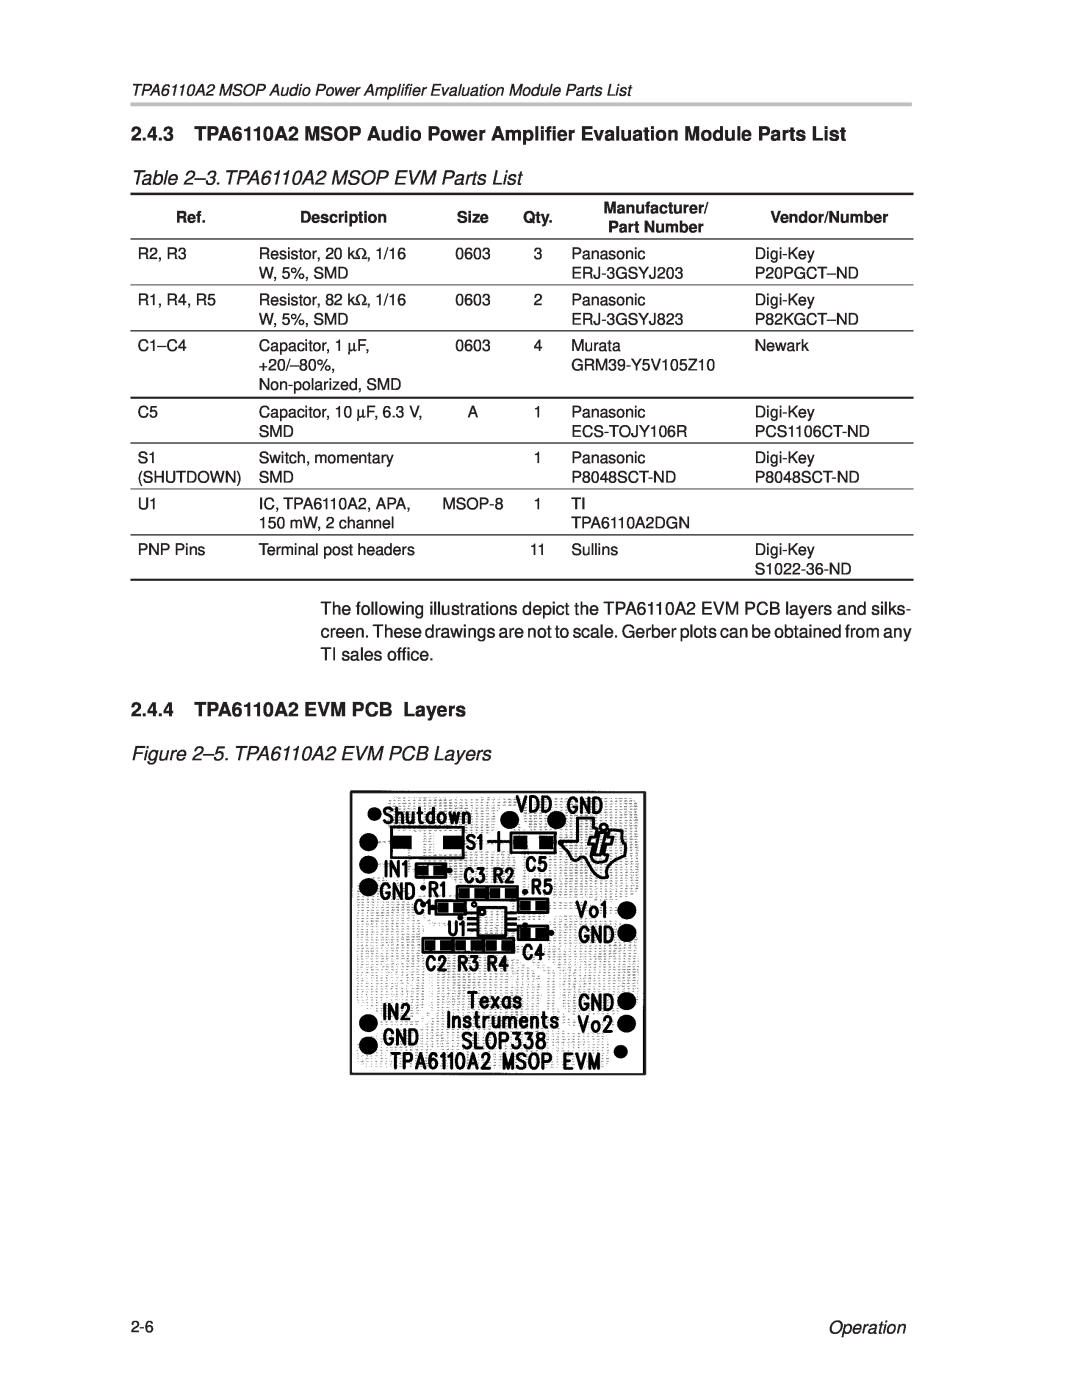 Texas Instruments manual ±3. TPA6110A2 MSOP EVM Parts List, 2.4.4TPA6110A2 EVM PCB Layers, ±5. TPA6110A2 EVM PCB Layers 